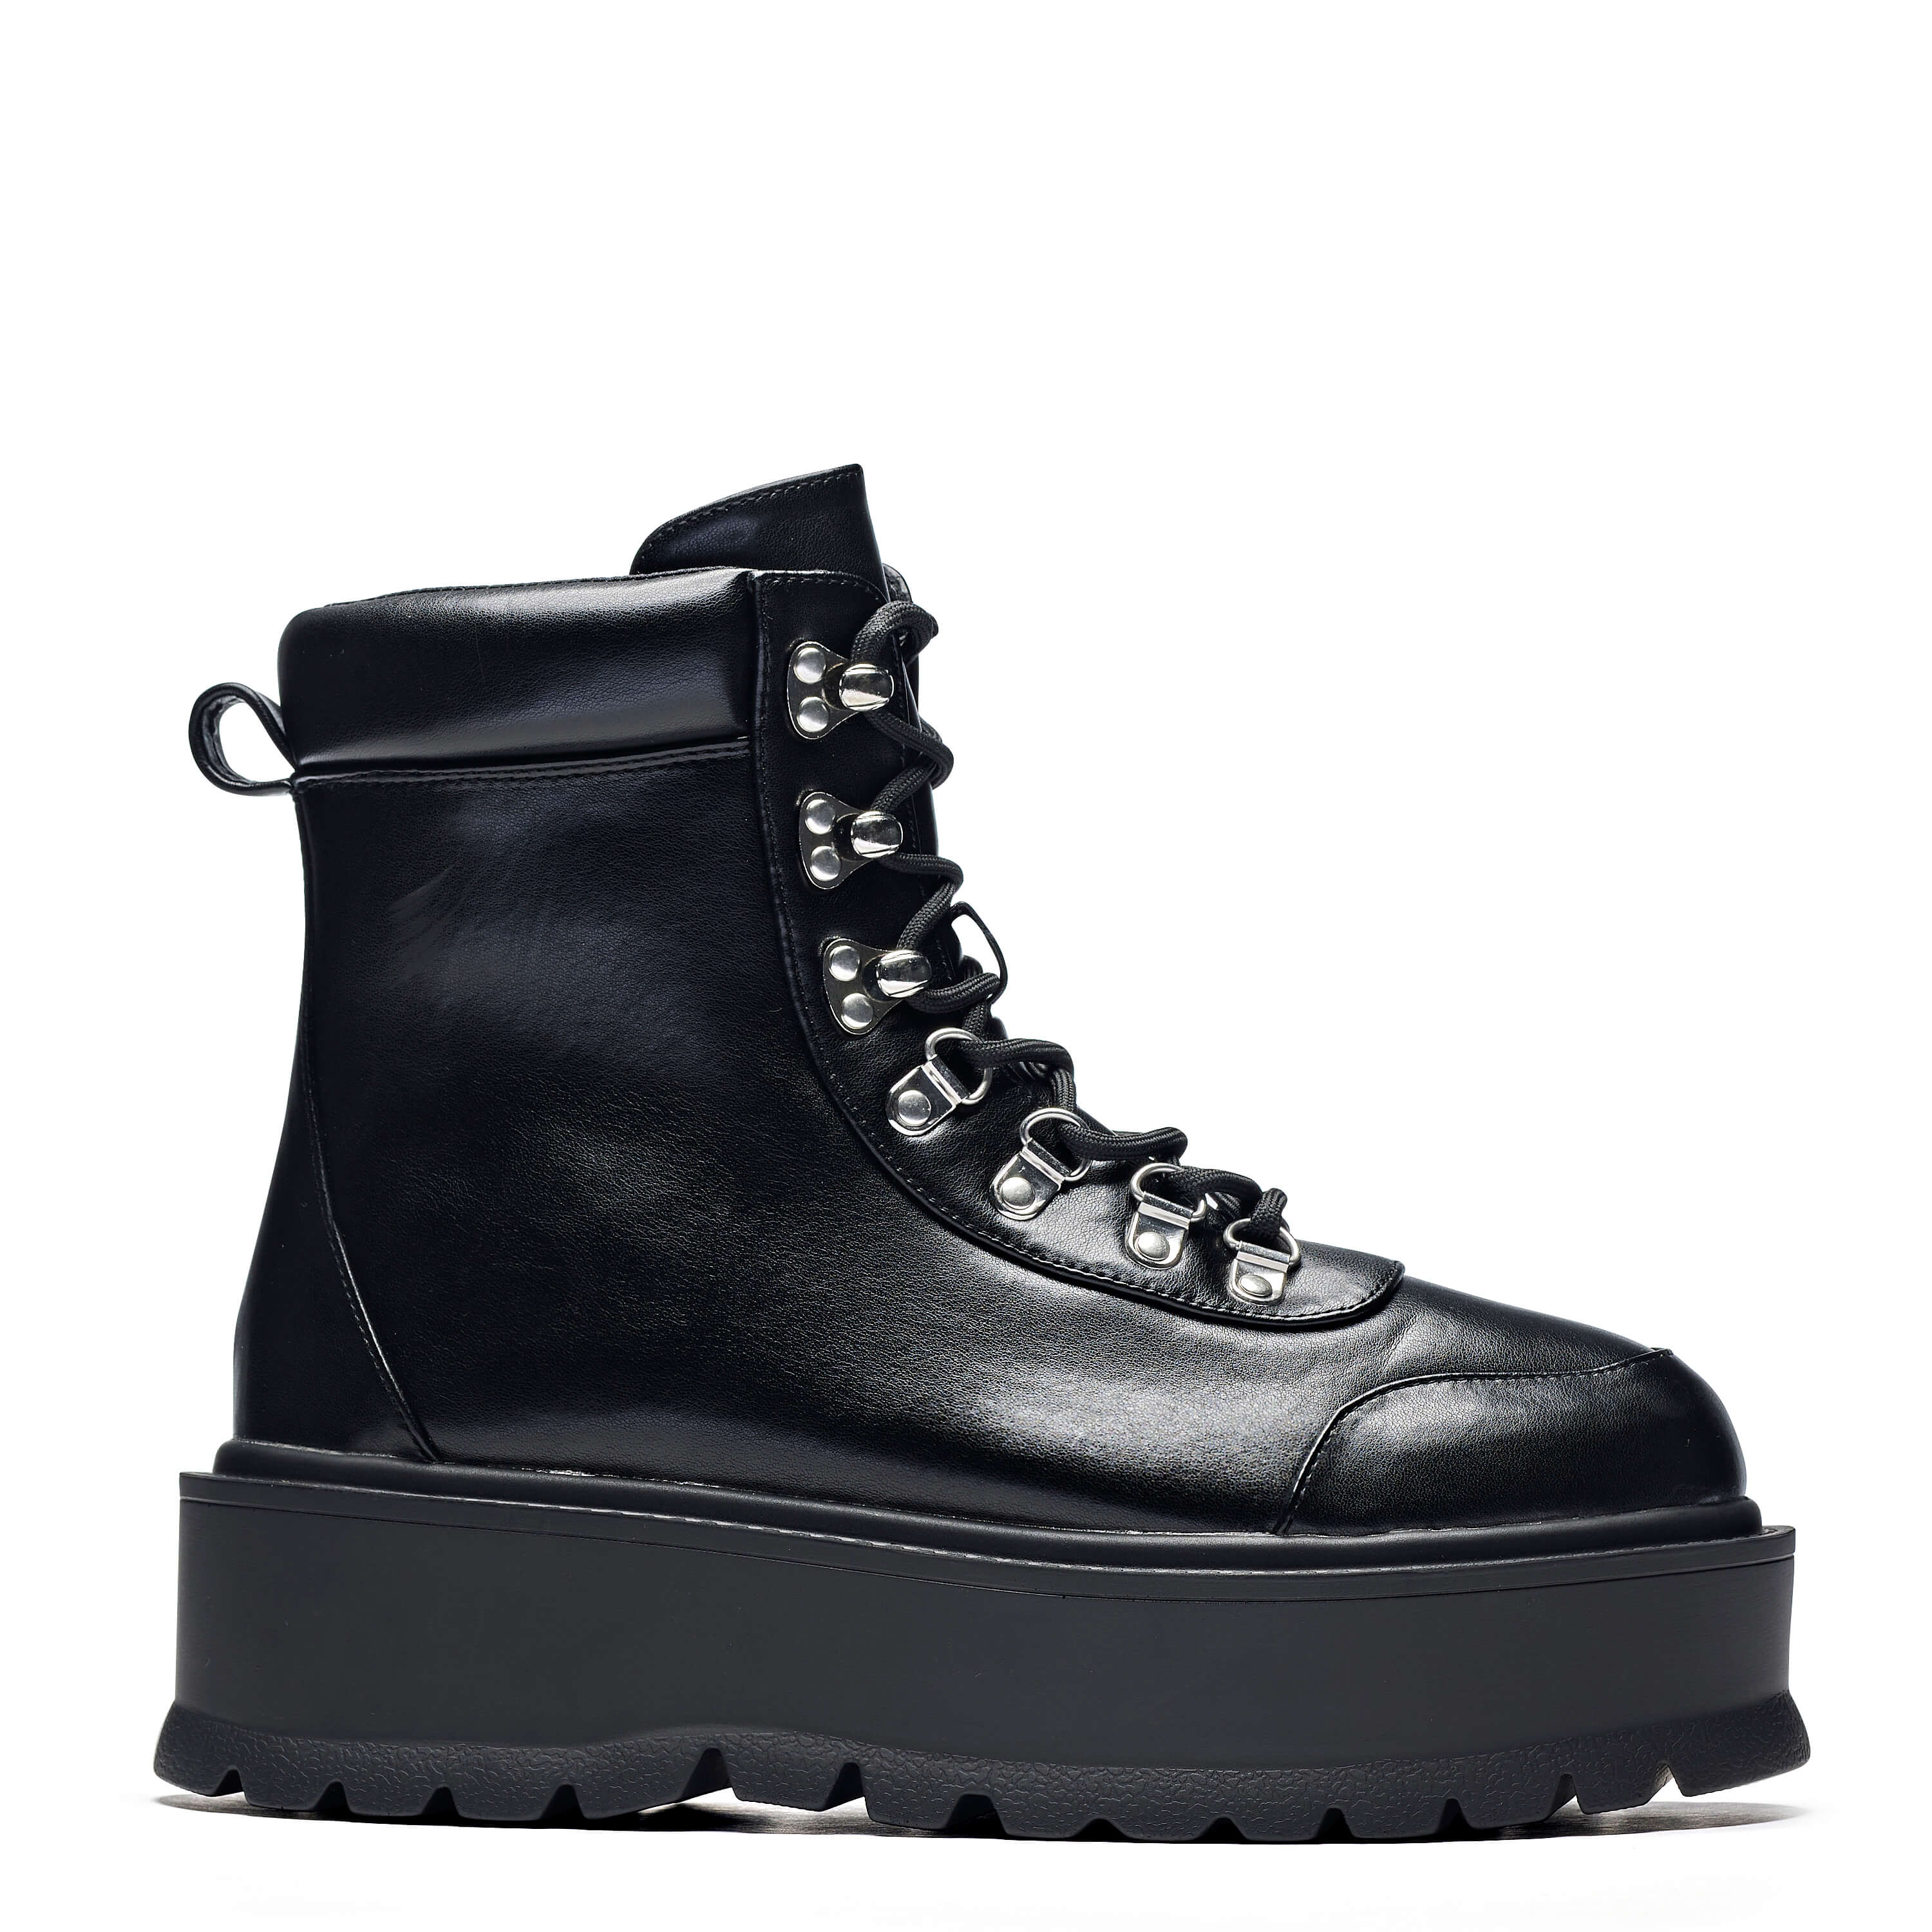 HYDRA All Black Matrix Platform Boots – KOI footwear